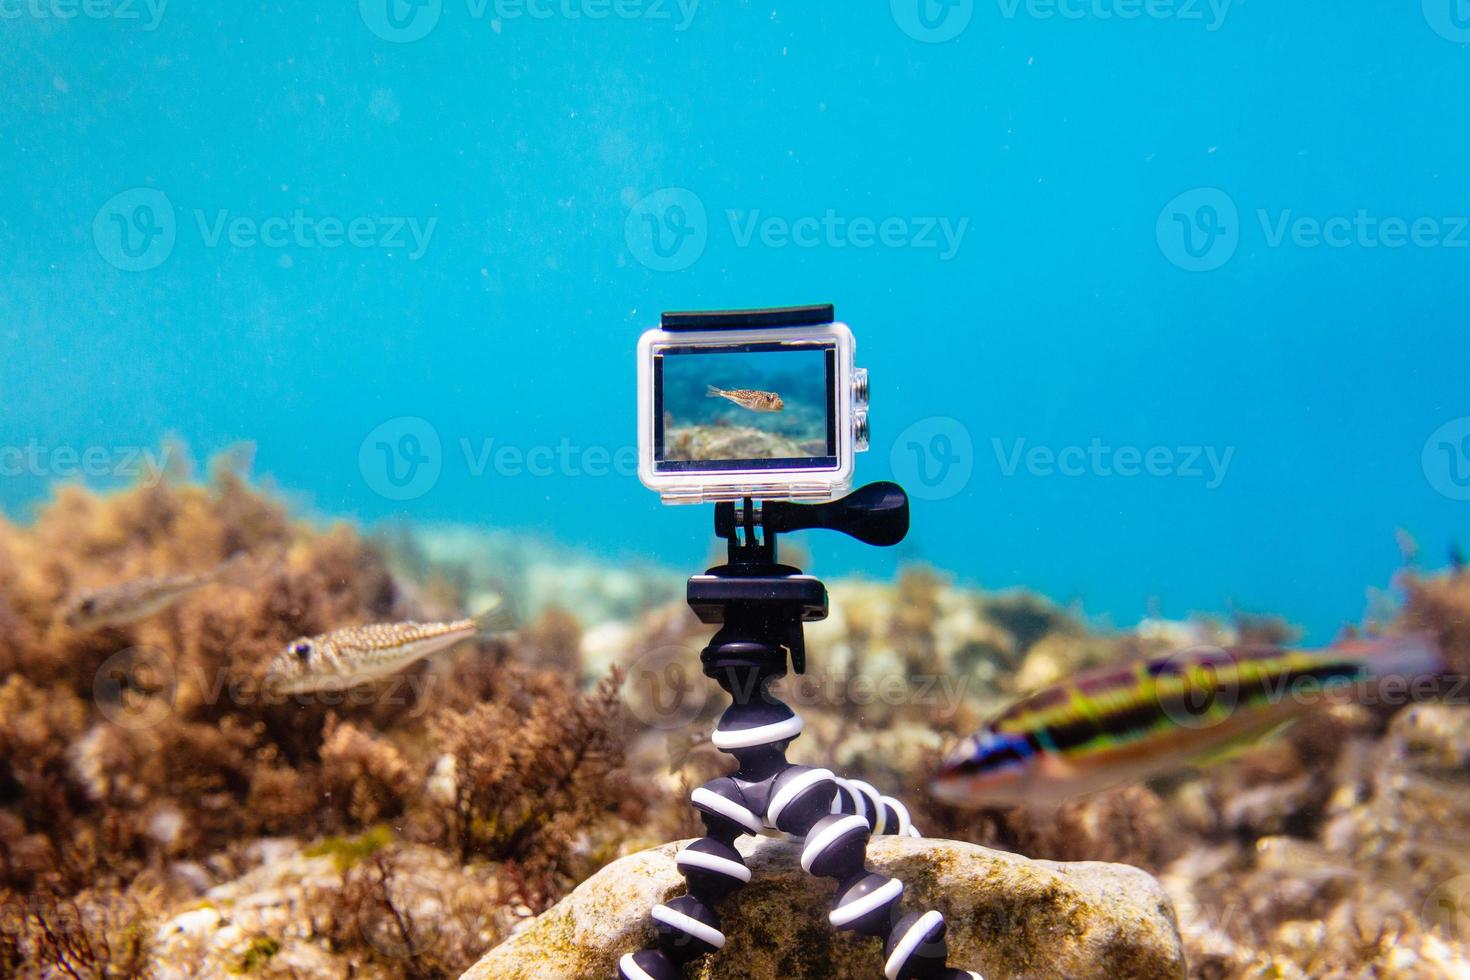 actiecamera in waterdichte doos gebruiken om onder water foto's en video's te maken foto